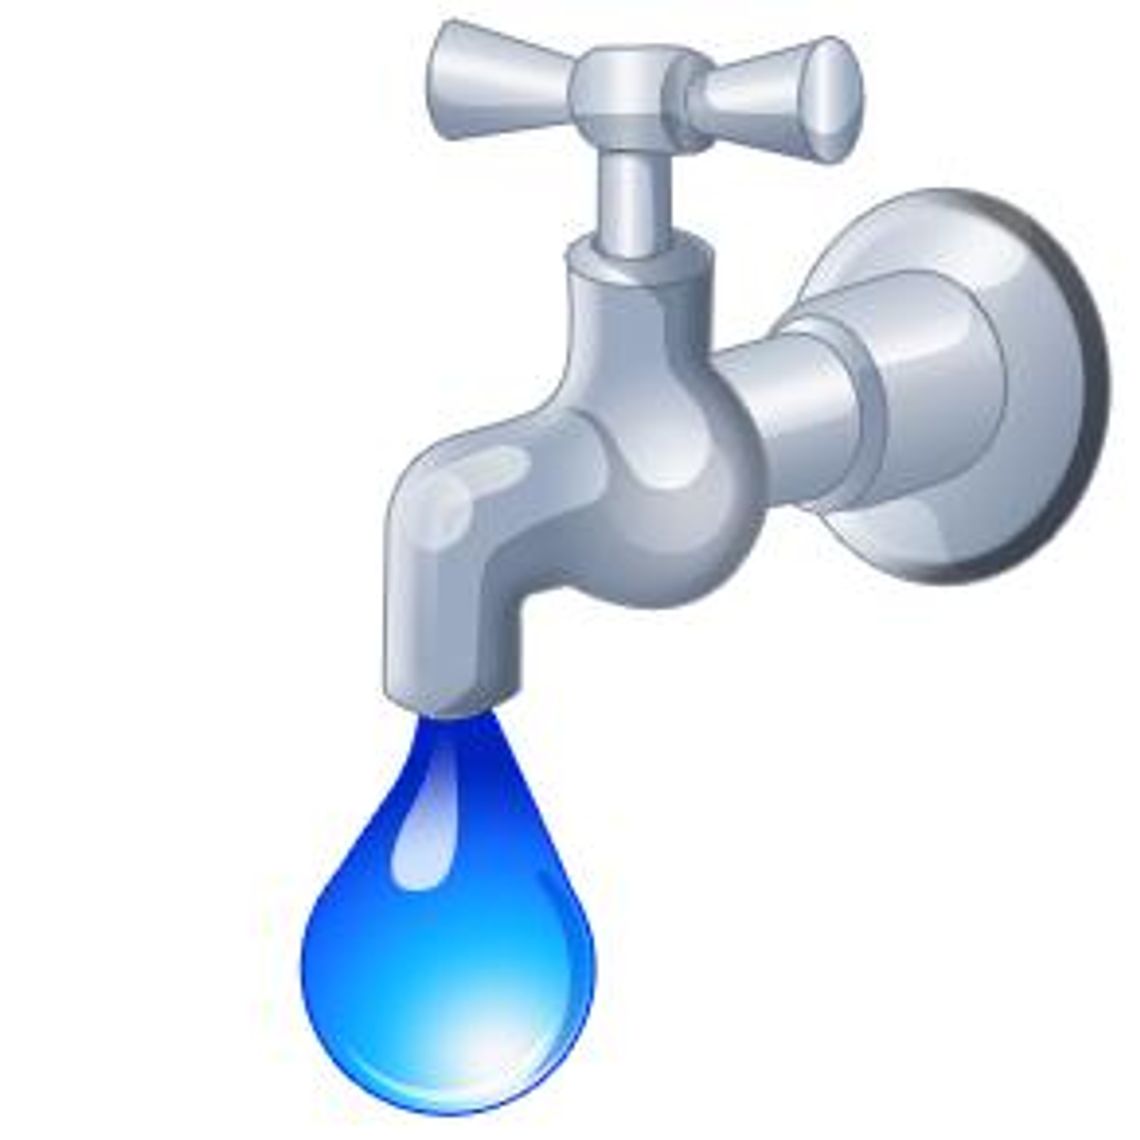 KOMUNIKAT Nr 1 w sprawie BRAKU PRZYDATNOŚCI WODY DO SPOŻYCIA z wodociągu zbiorowego zaopatrzenia /zakładowego/ SRH Fajsławice